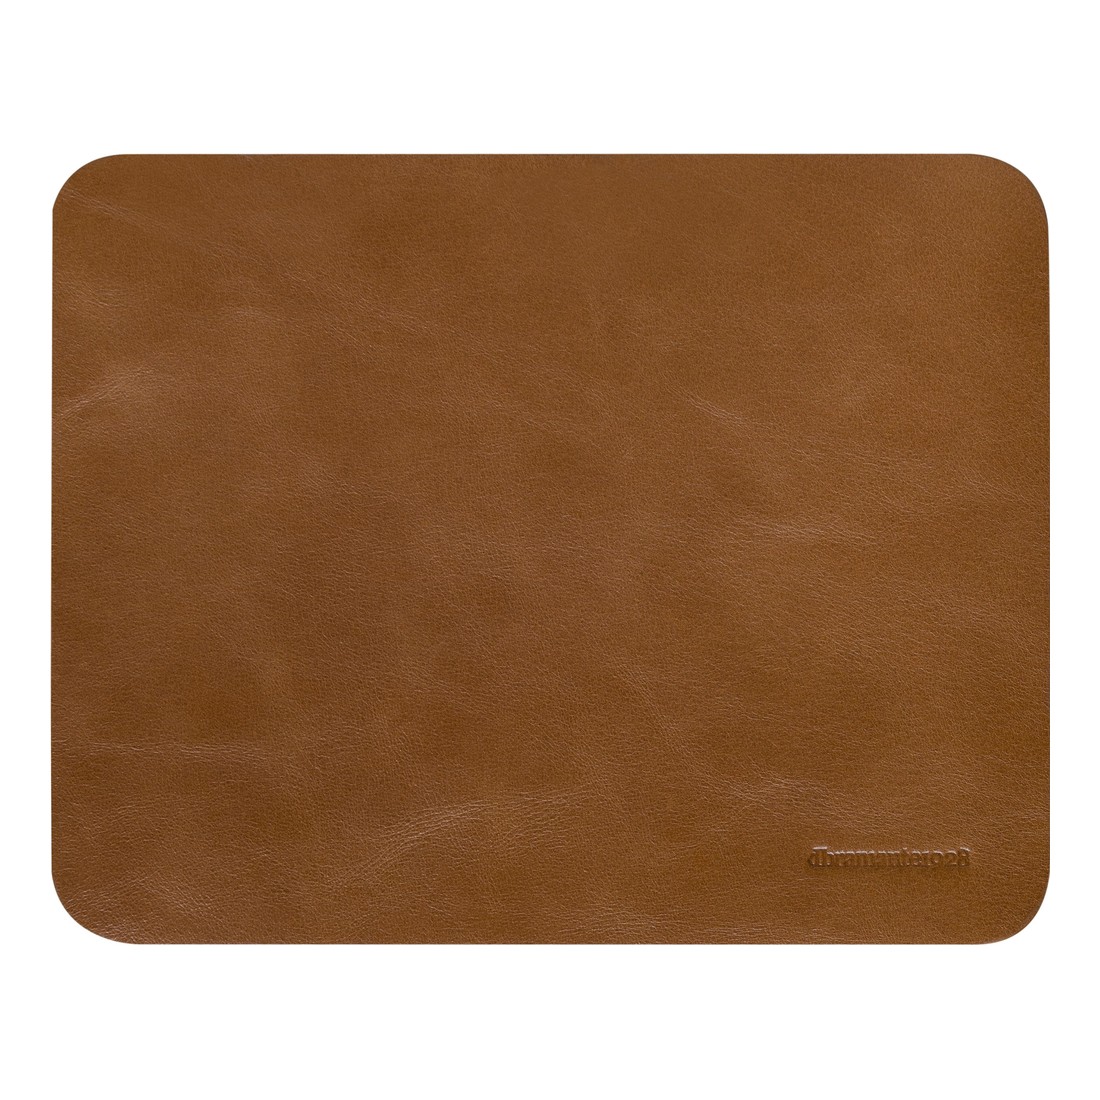 dbramante1928 Copenhagen Leather Mouse Pad - Tan (20 x 25 cm)